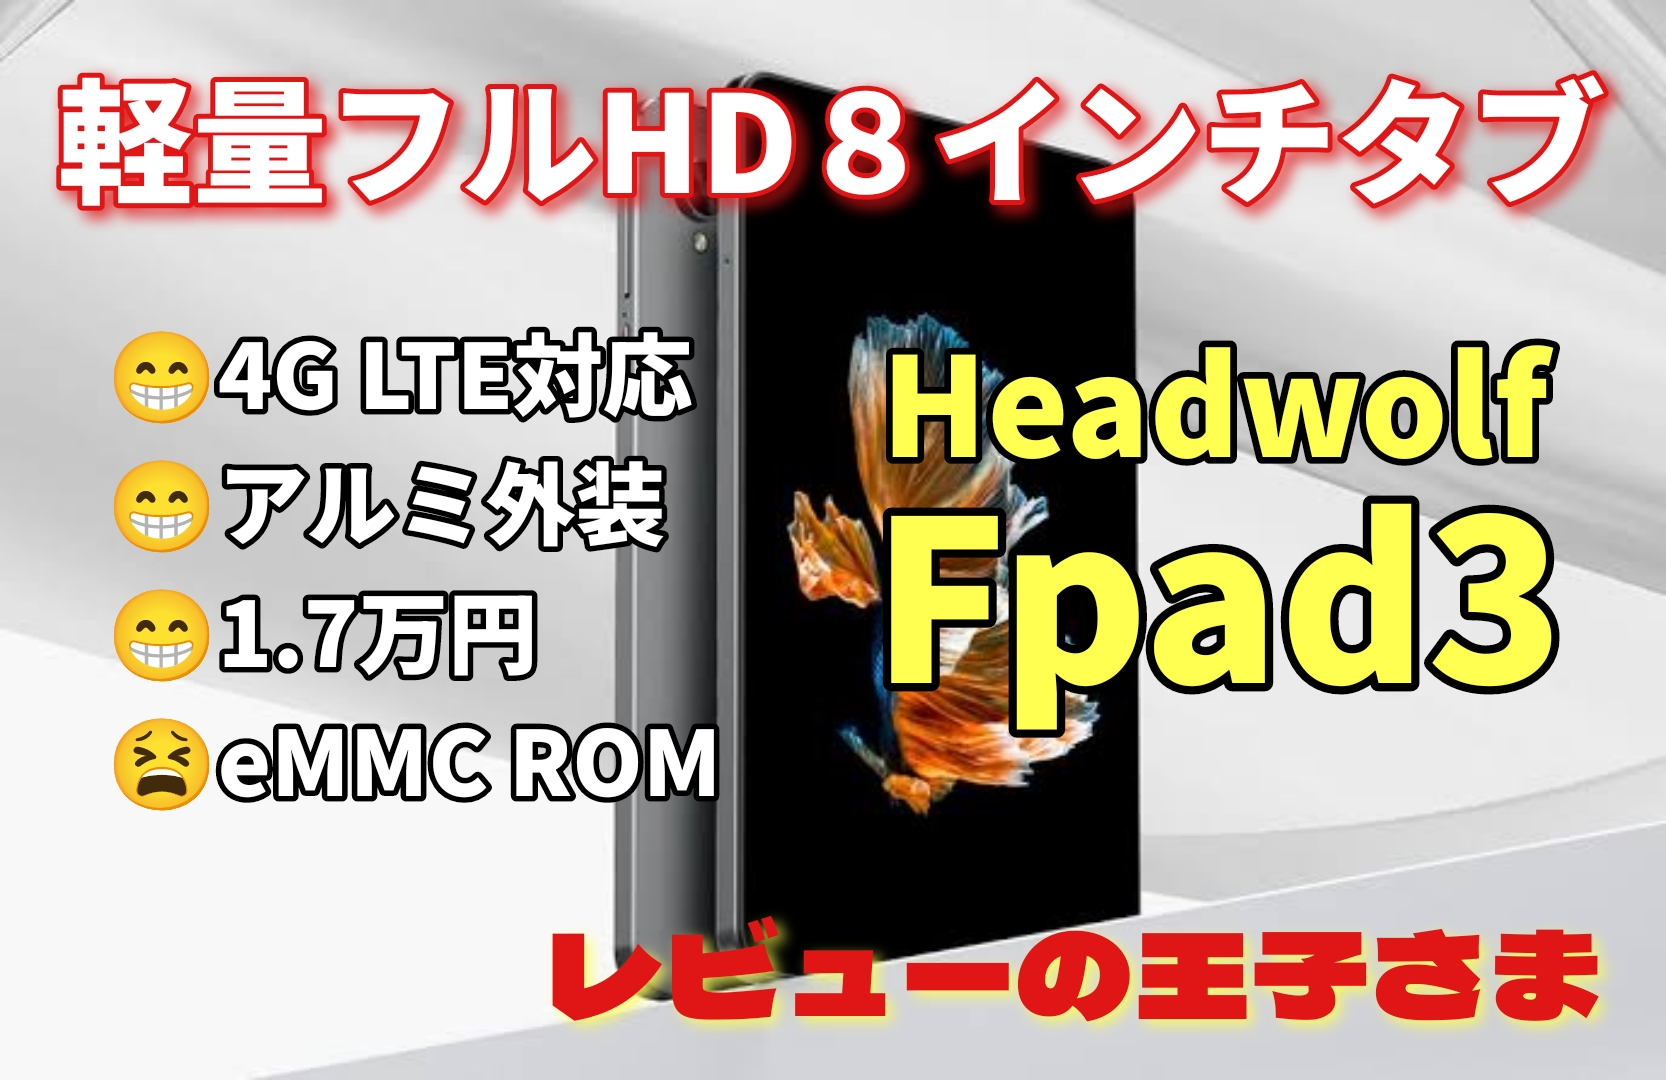 レビューの王子さま: 【レビュー】HEADWOLF 8インチタブレット Fpad3を買ってみた